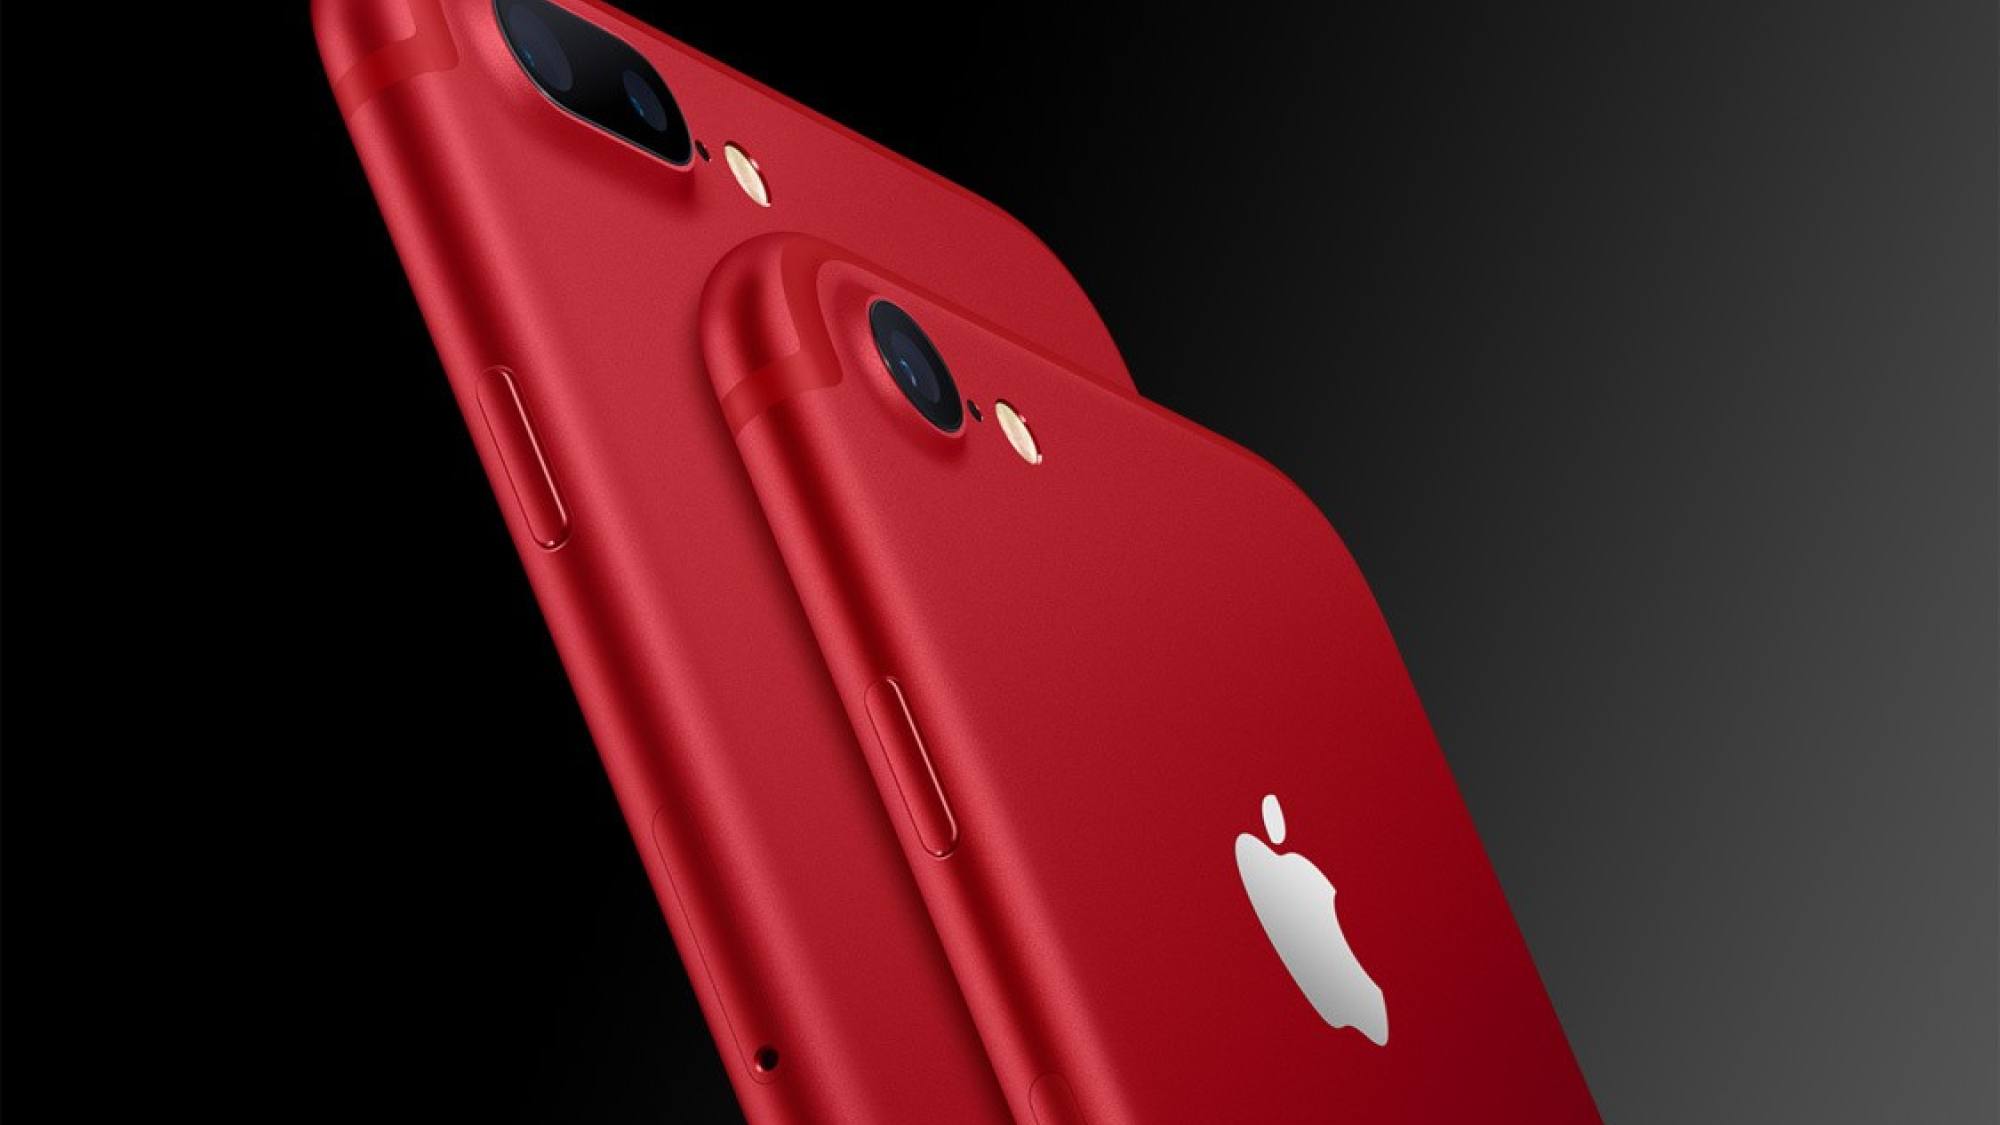 iphone 7 plus red, EntrepreNerd